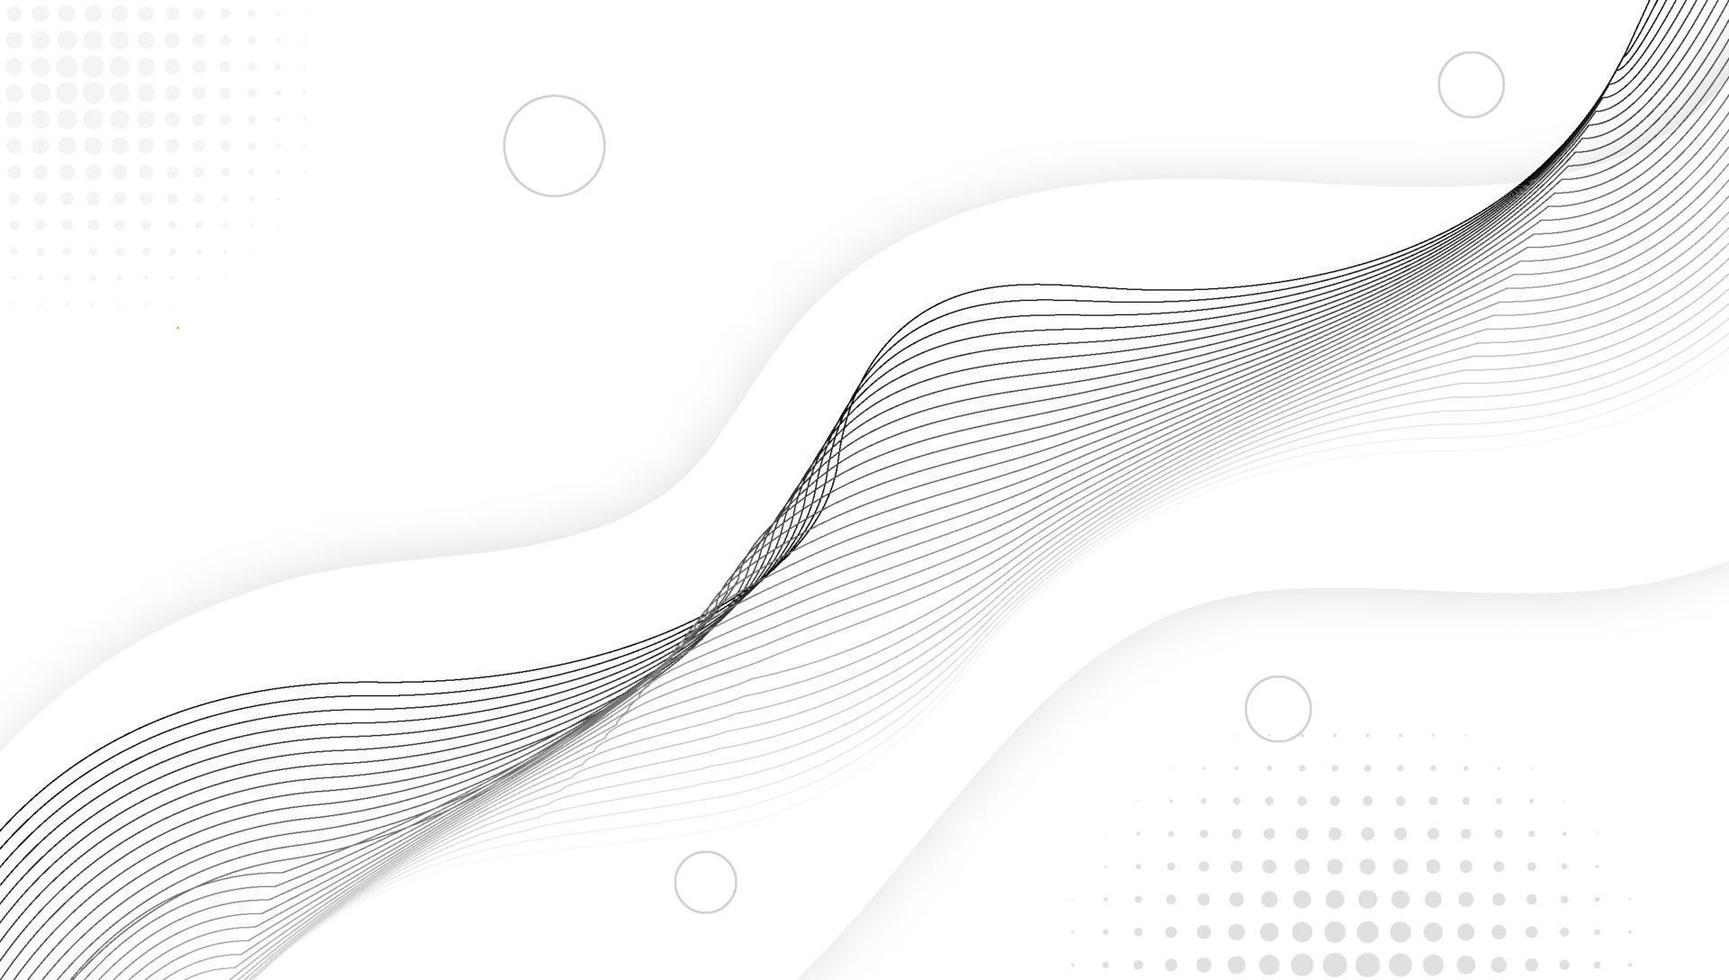 minimalista e moderno futuro abstrato geométrico ondulado branco e cinza ilustração de design de fundo vetor